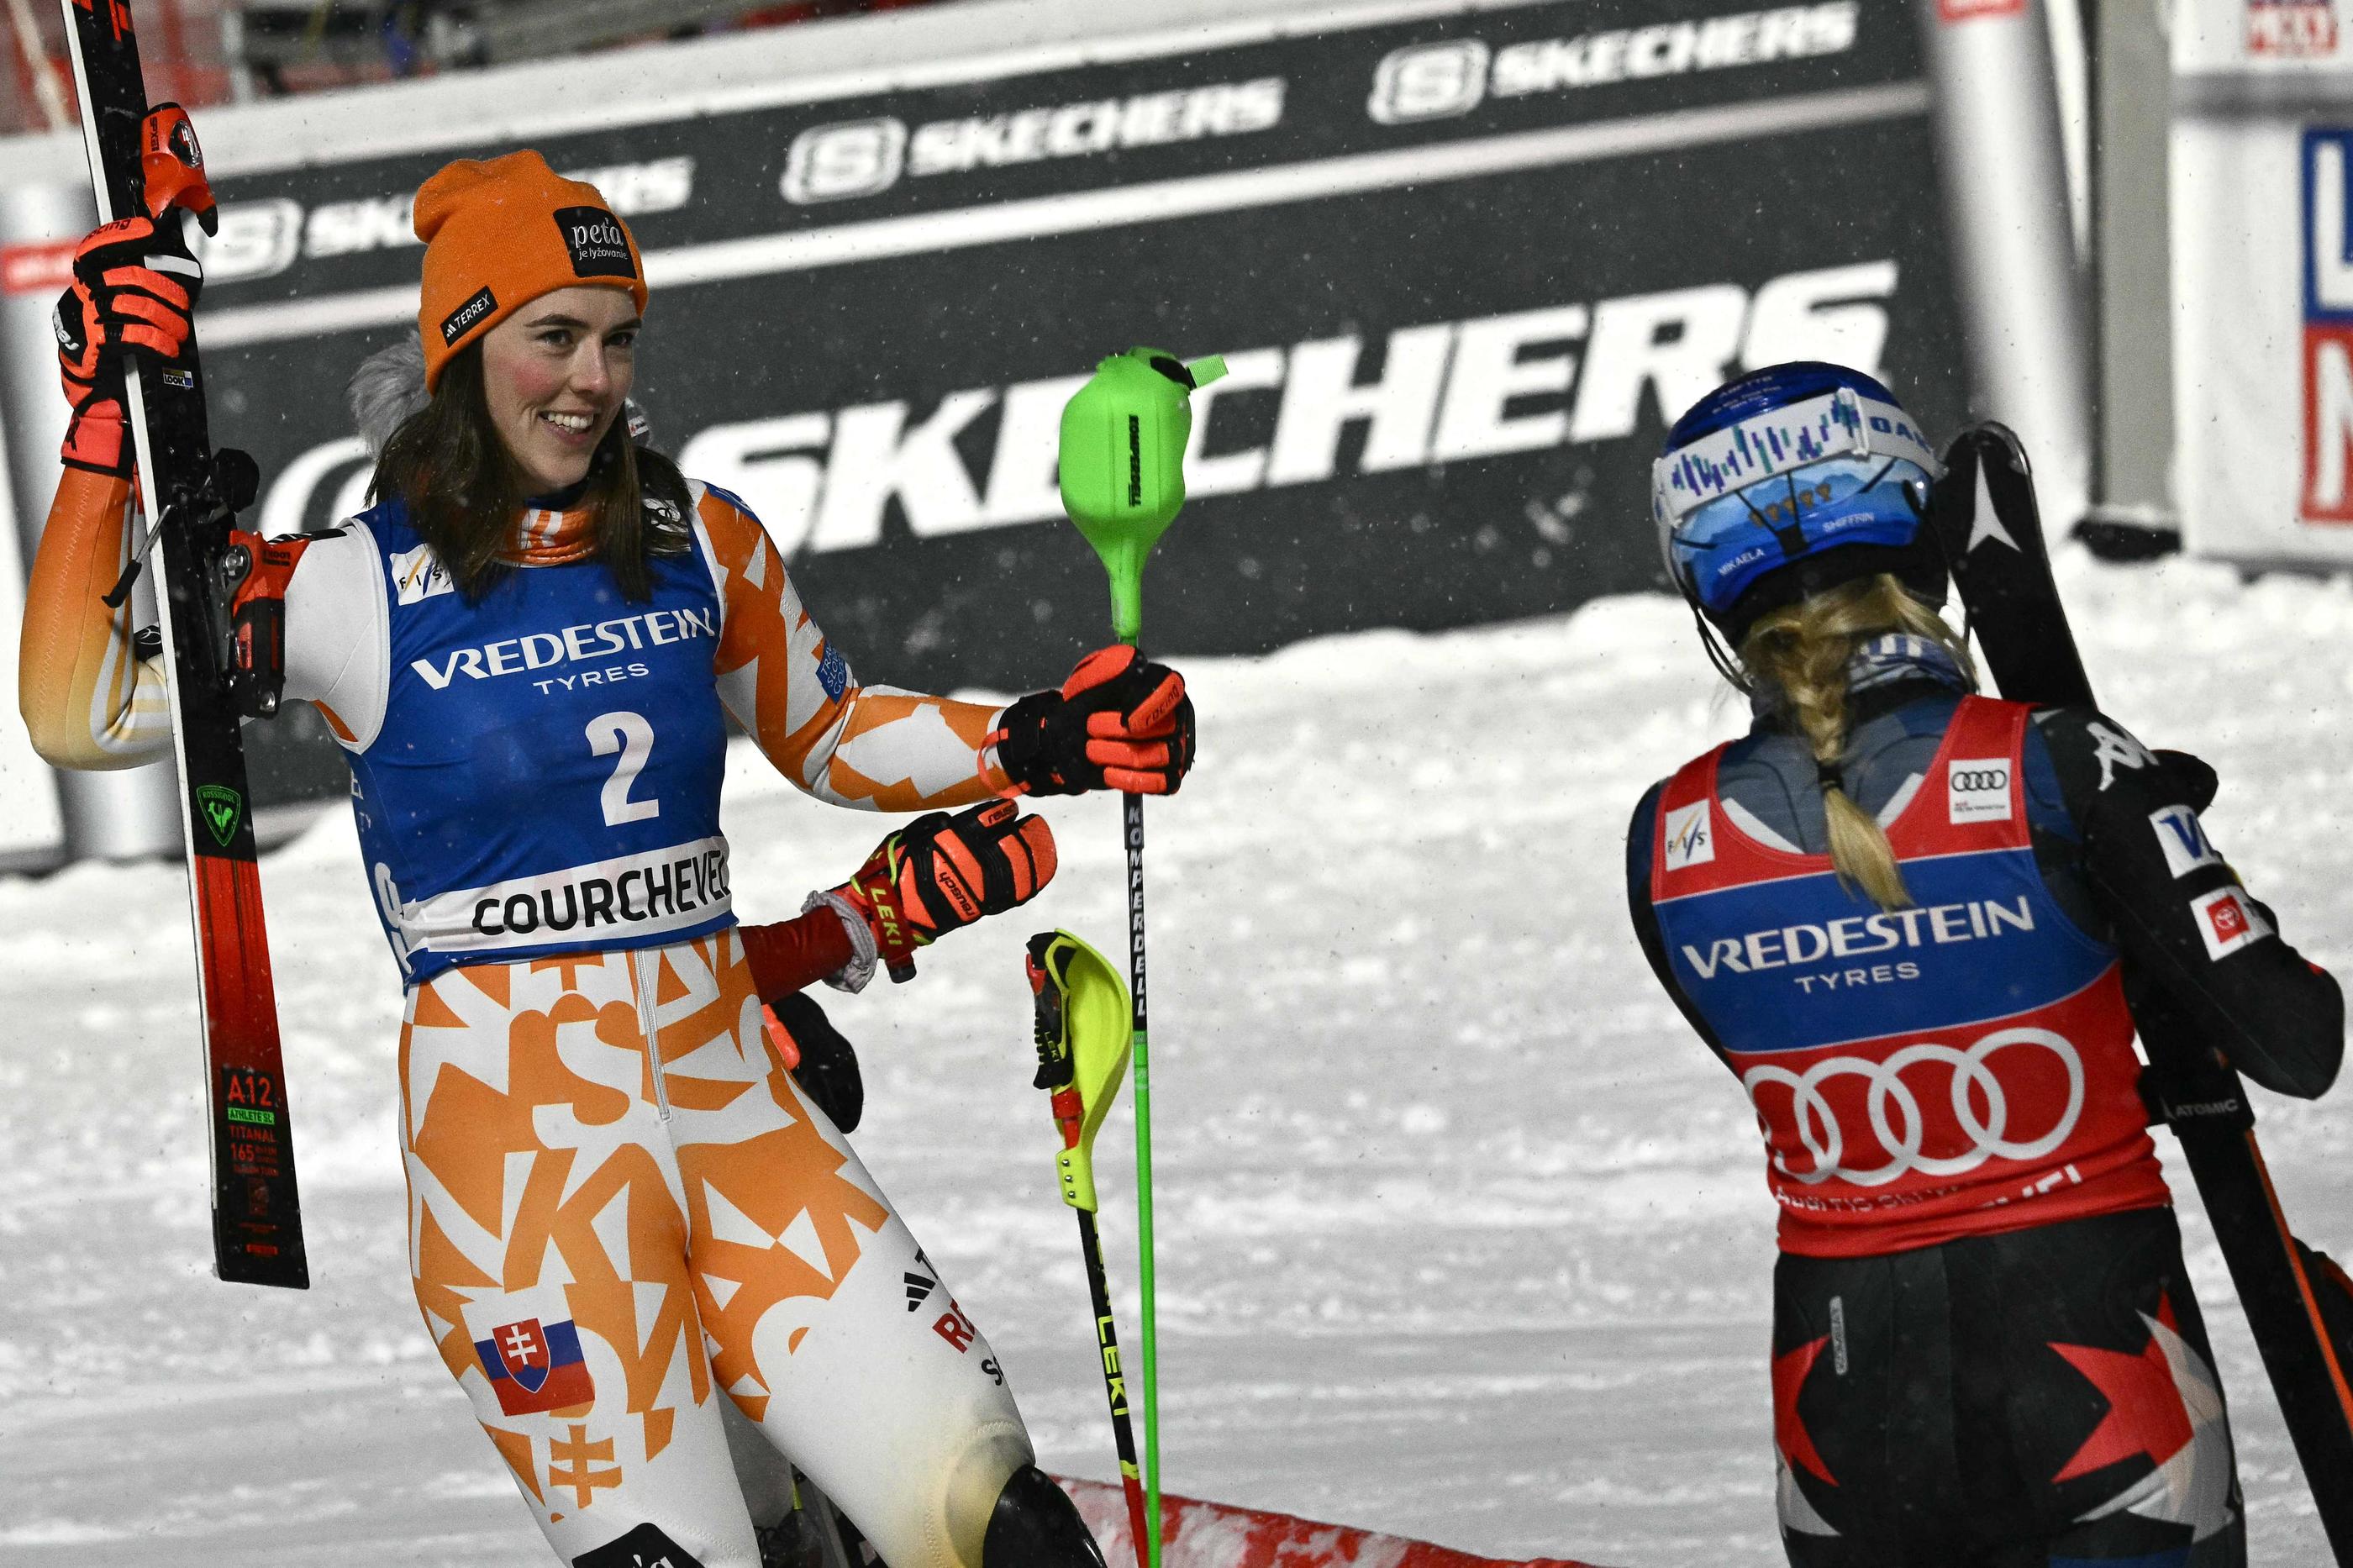 Ski : duel au sommet sous la neige de Courchevel, Vlhova domine